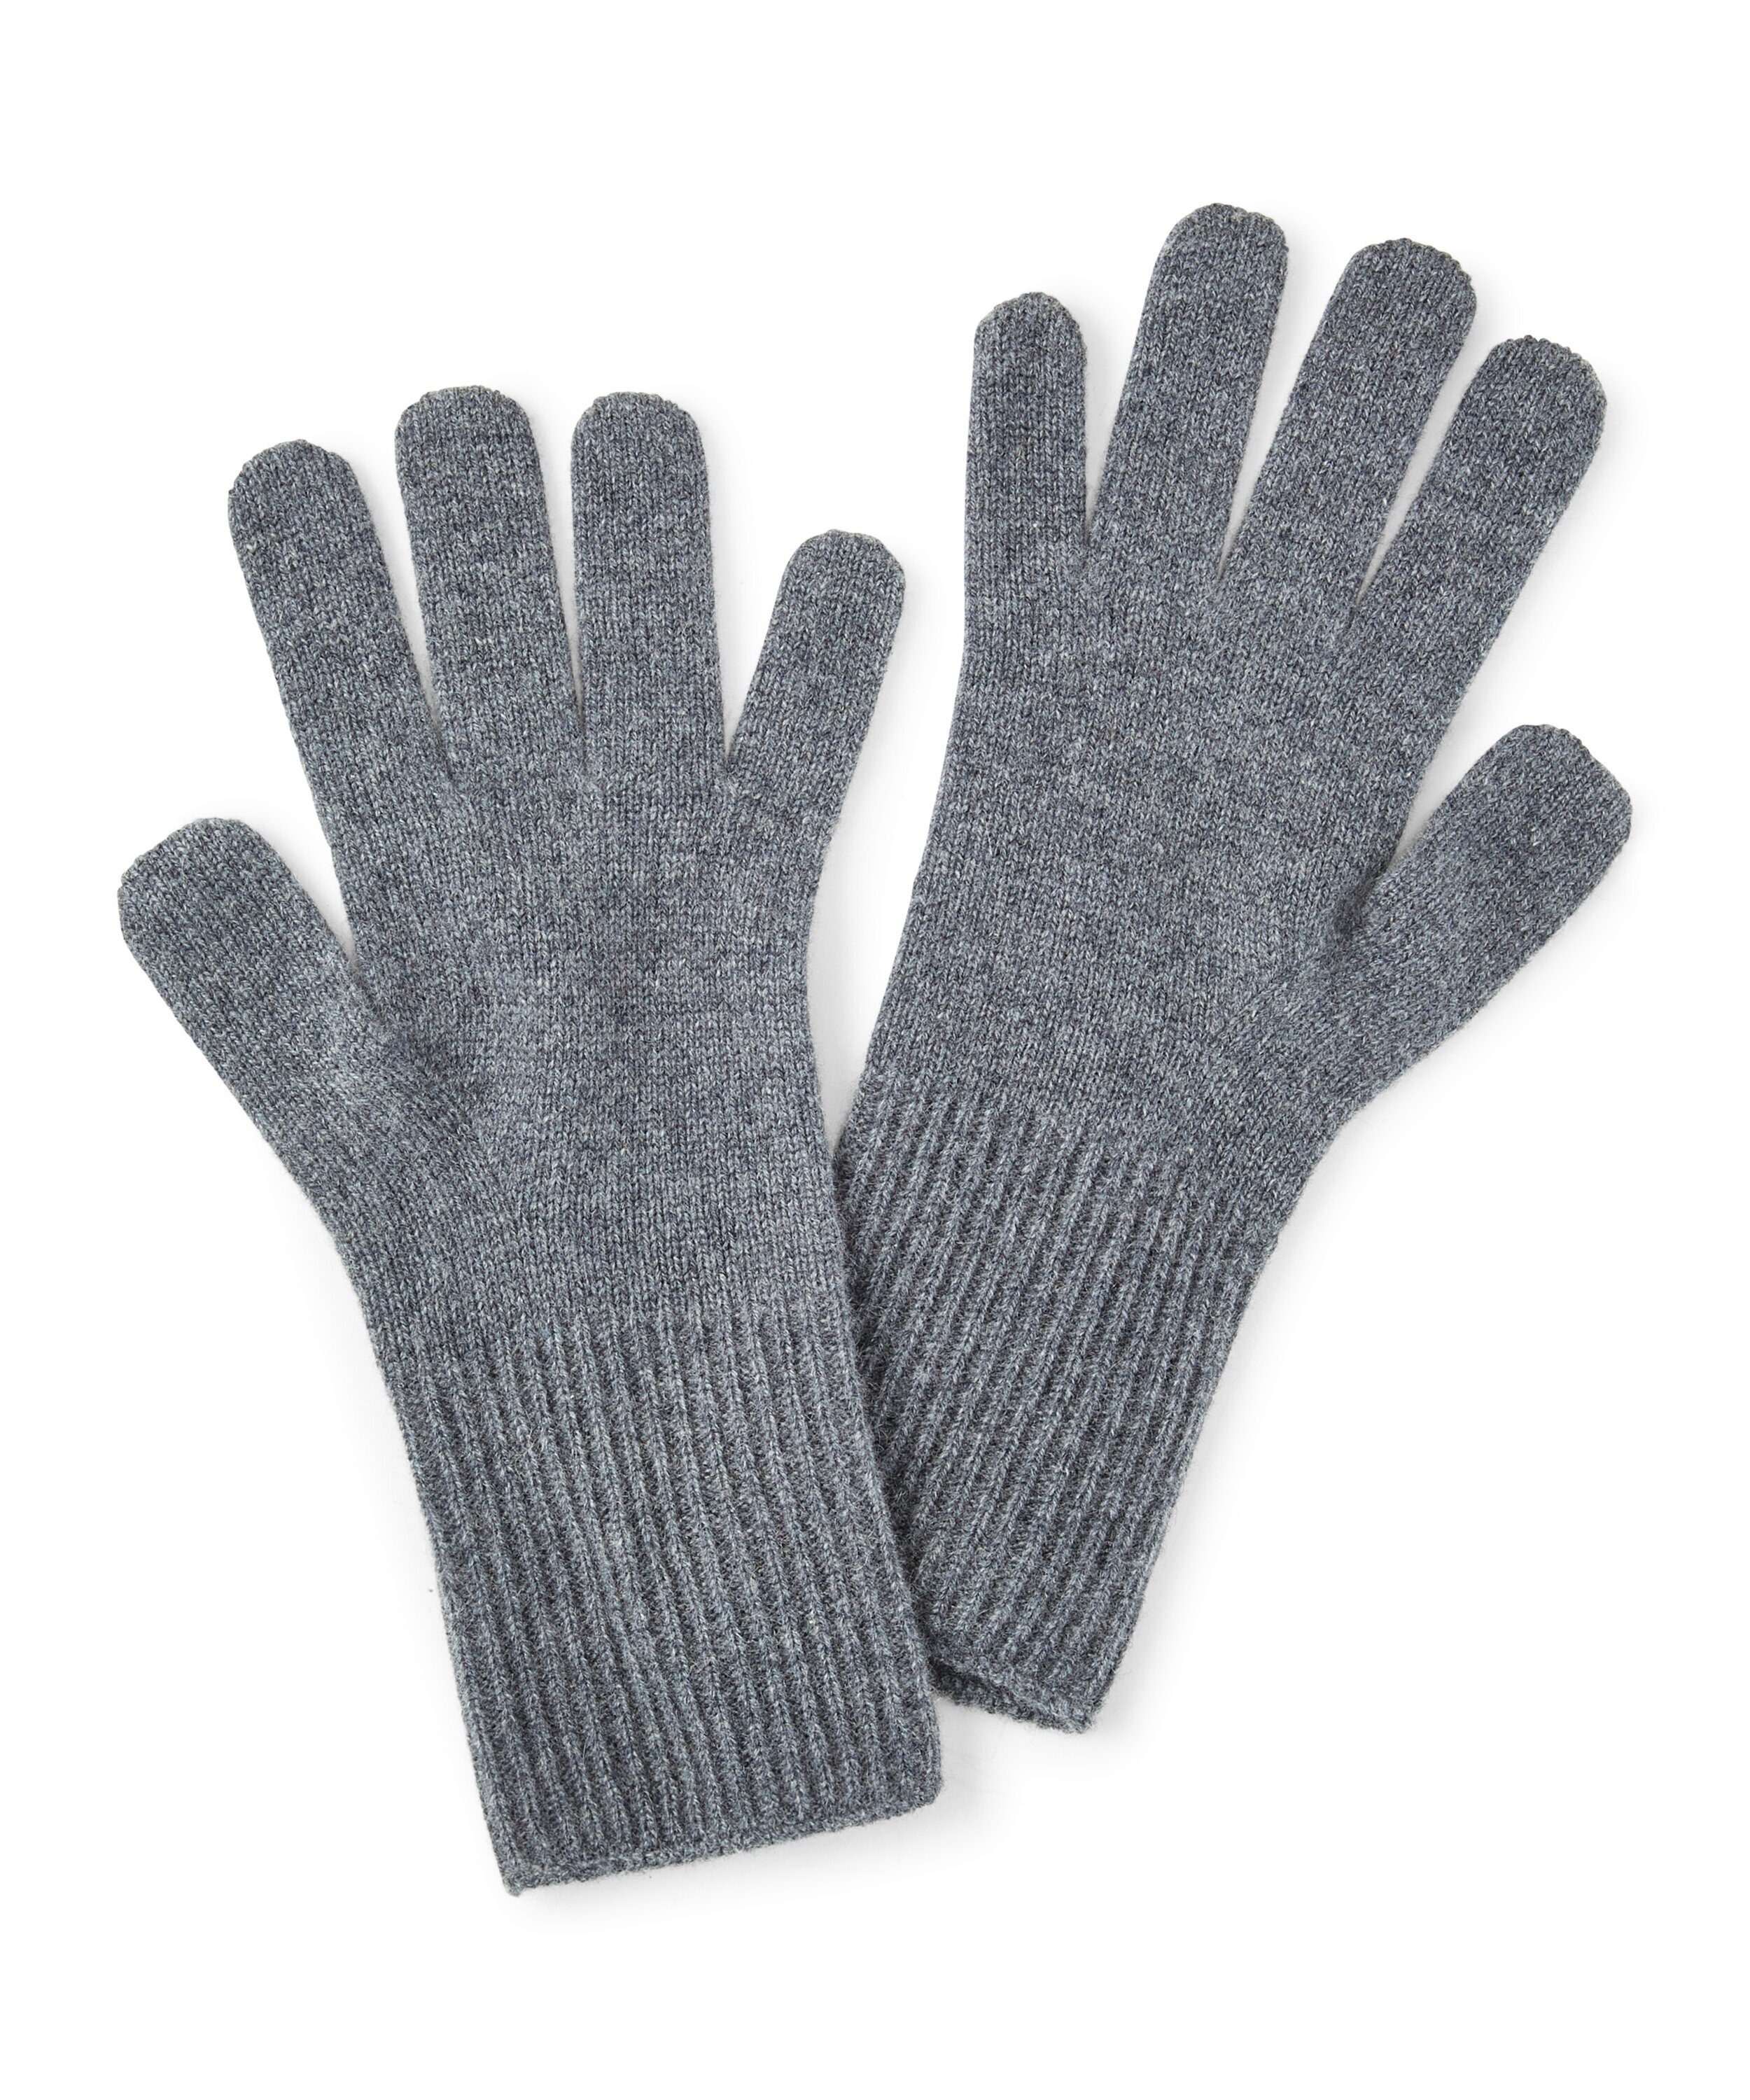 Graue Handschuhe für Damen online kaufen | OTTO